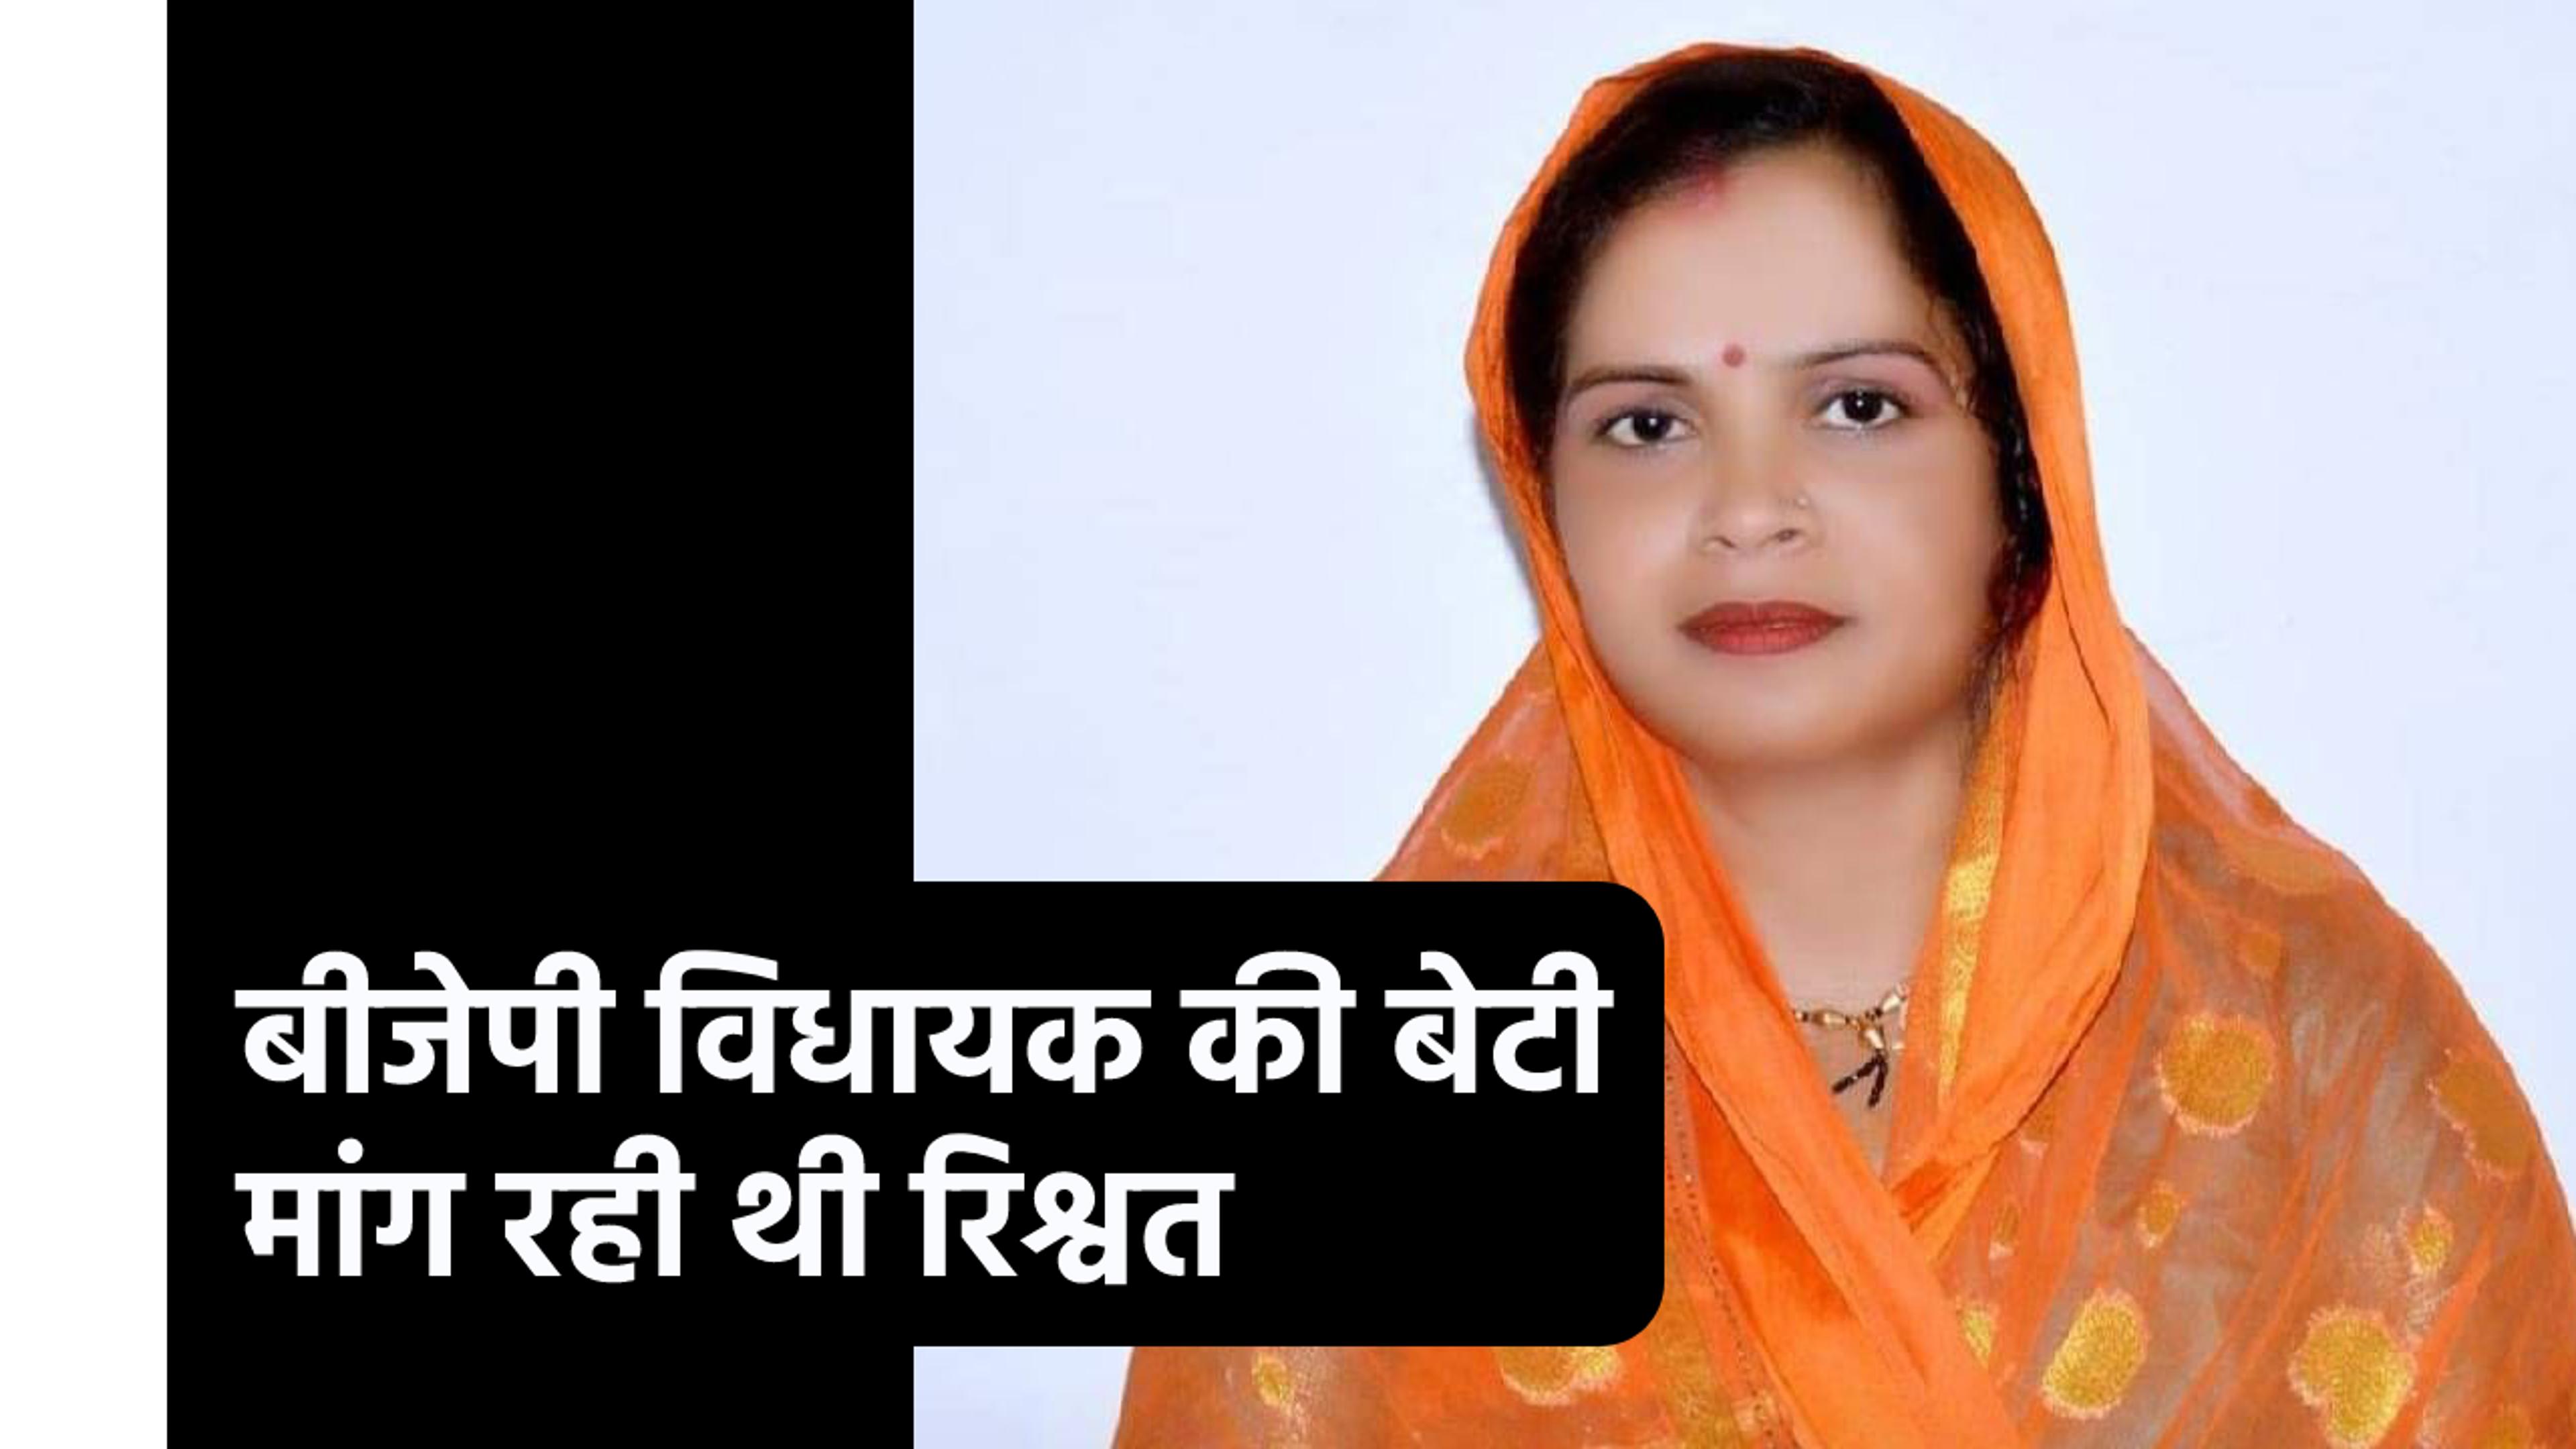 Lokayukta Trap: भाजपा विधायक की बेटी रंगे हाथों पकड़ाई, मांग रही थी 30 हजार रुपए
रिश्वत